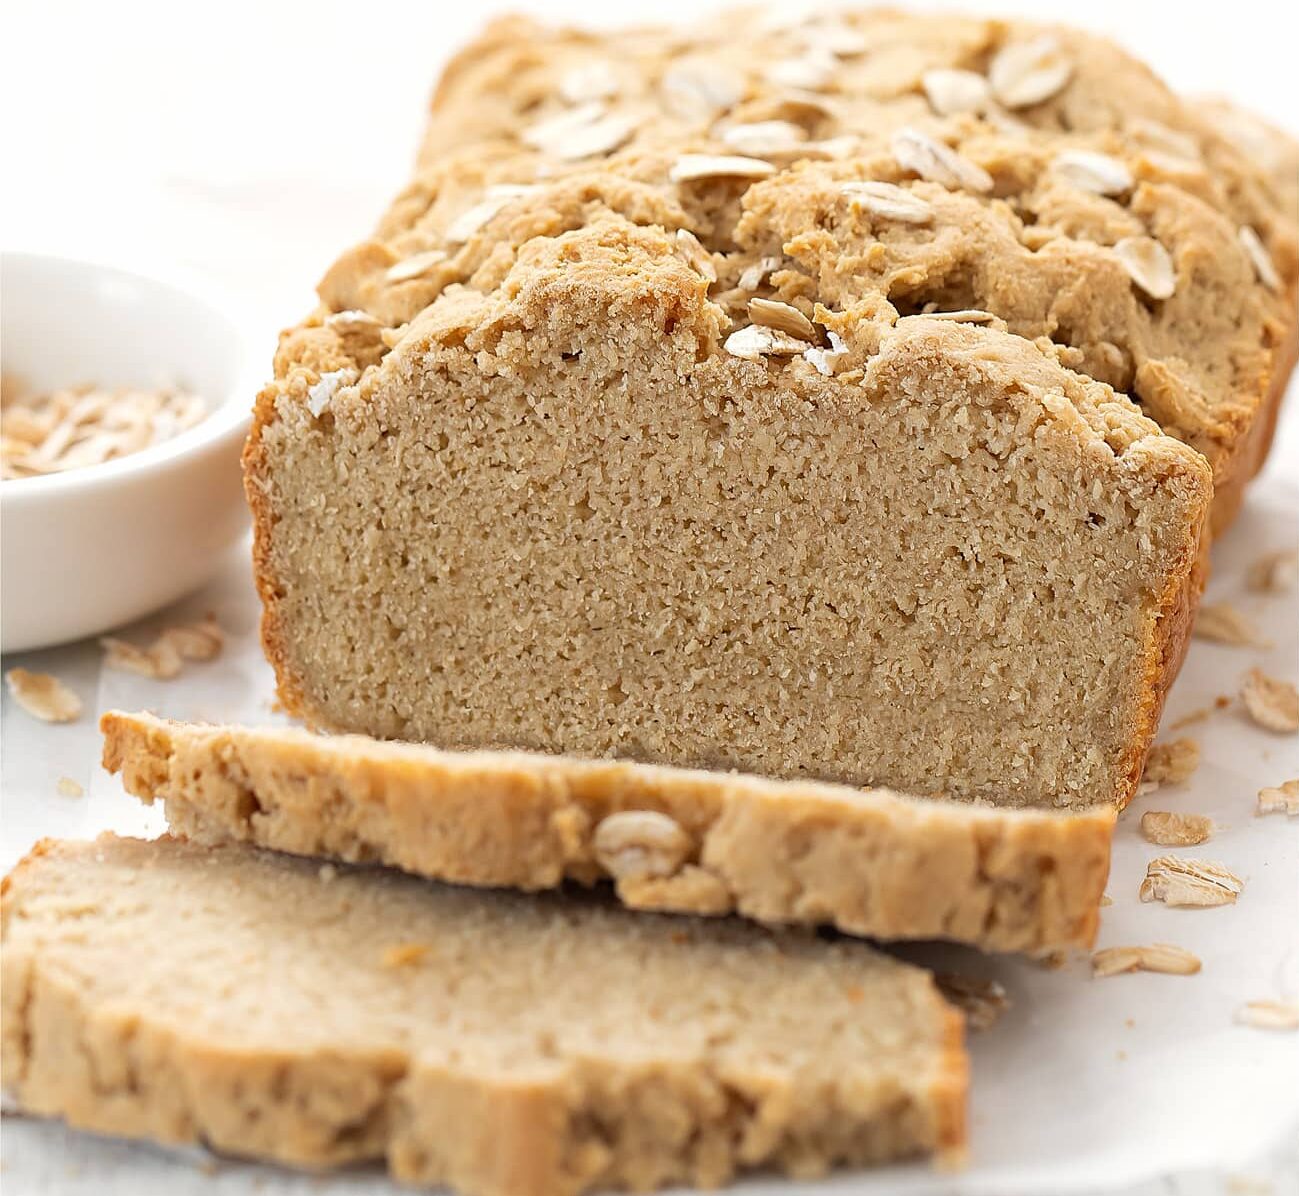 Bánh mì yến mạch phù hợp cho những người đang muốn giảm cân hoặc ăn kiêng.